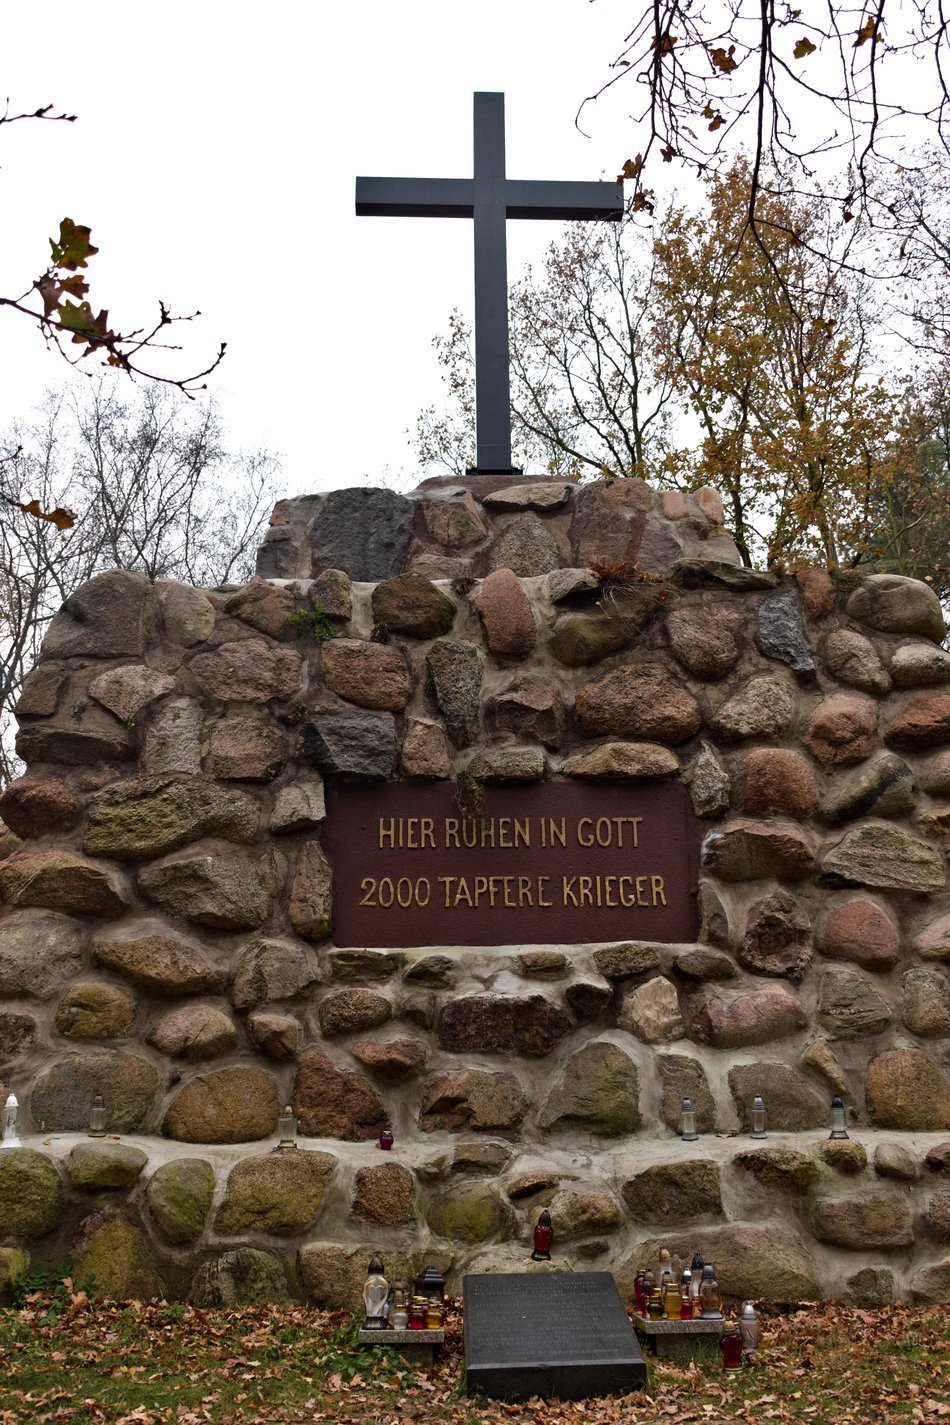 Grobowa Góra w Starej Gadce. Największy łódzki cmentarz ofiar I wojny światowej